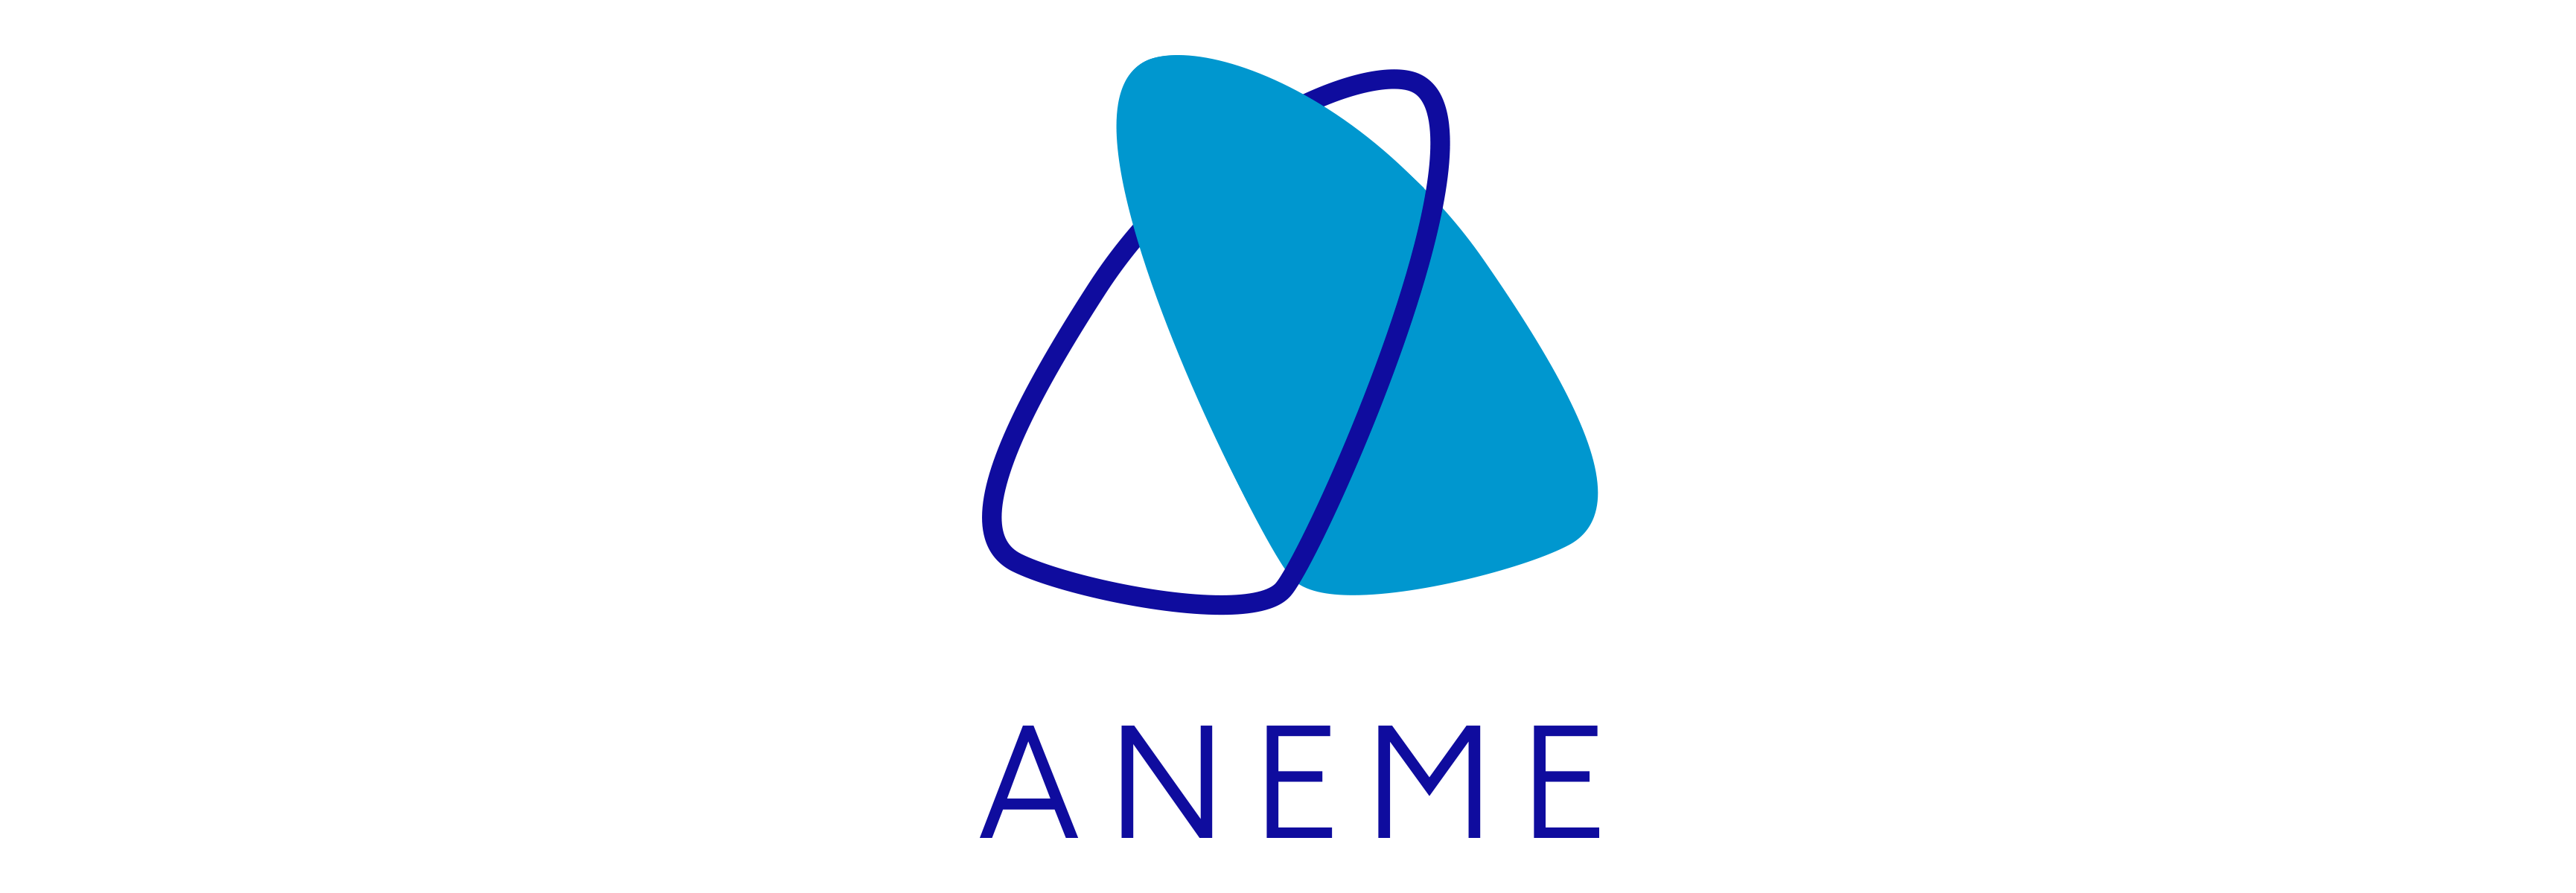 Aneme - Asociación de Neumólogos de Mérida logo